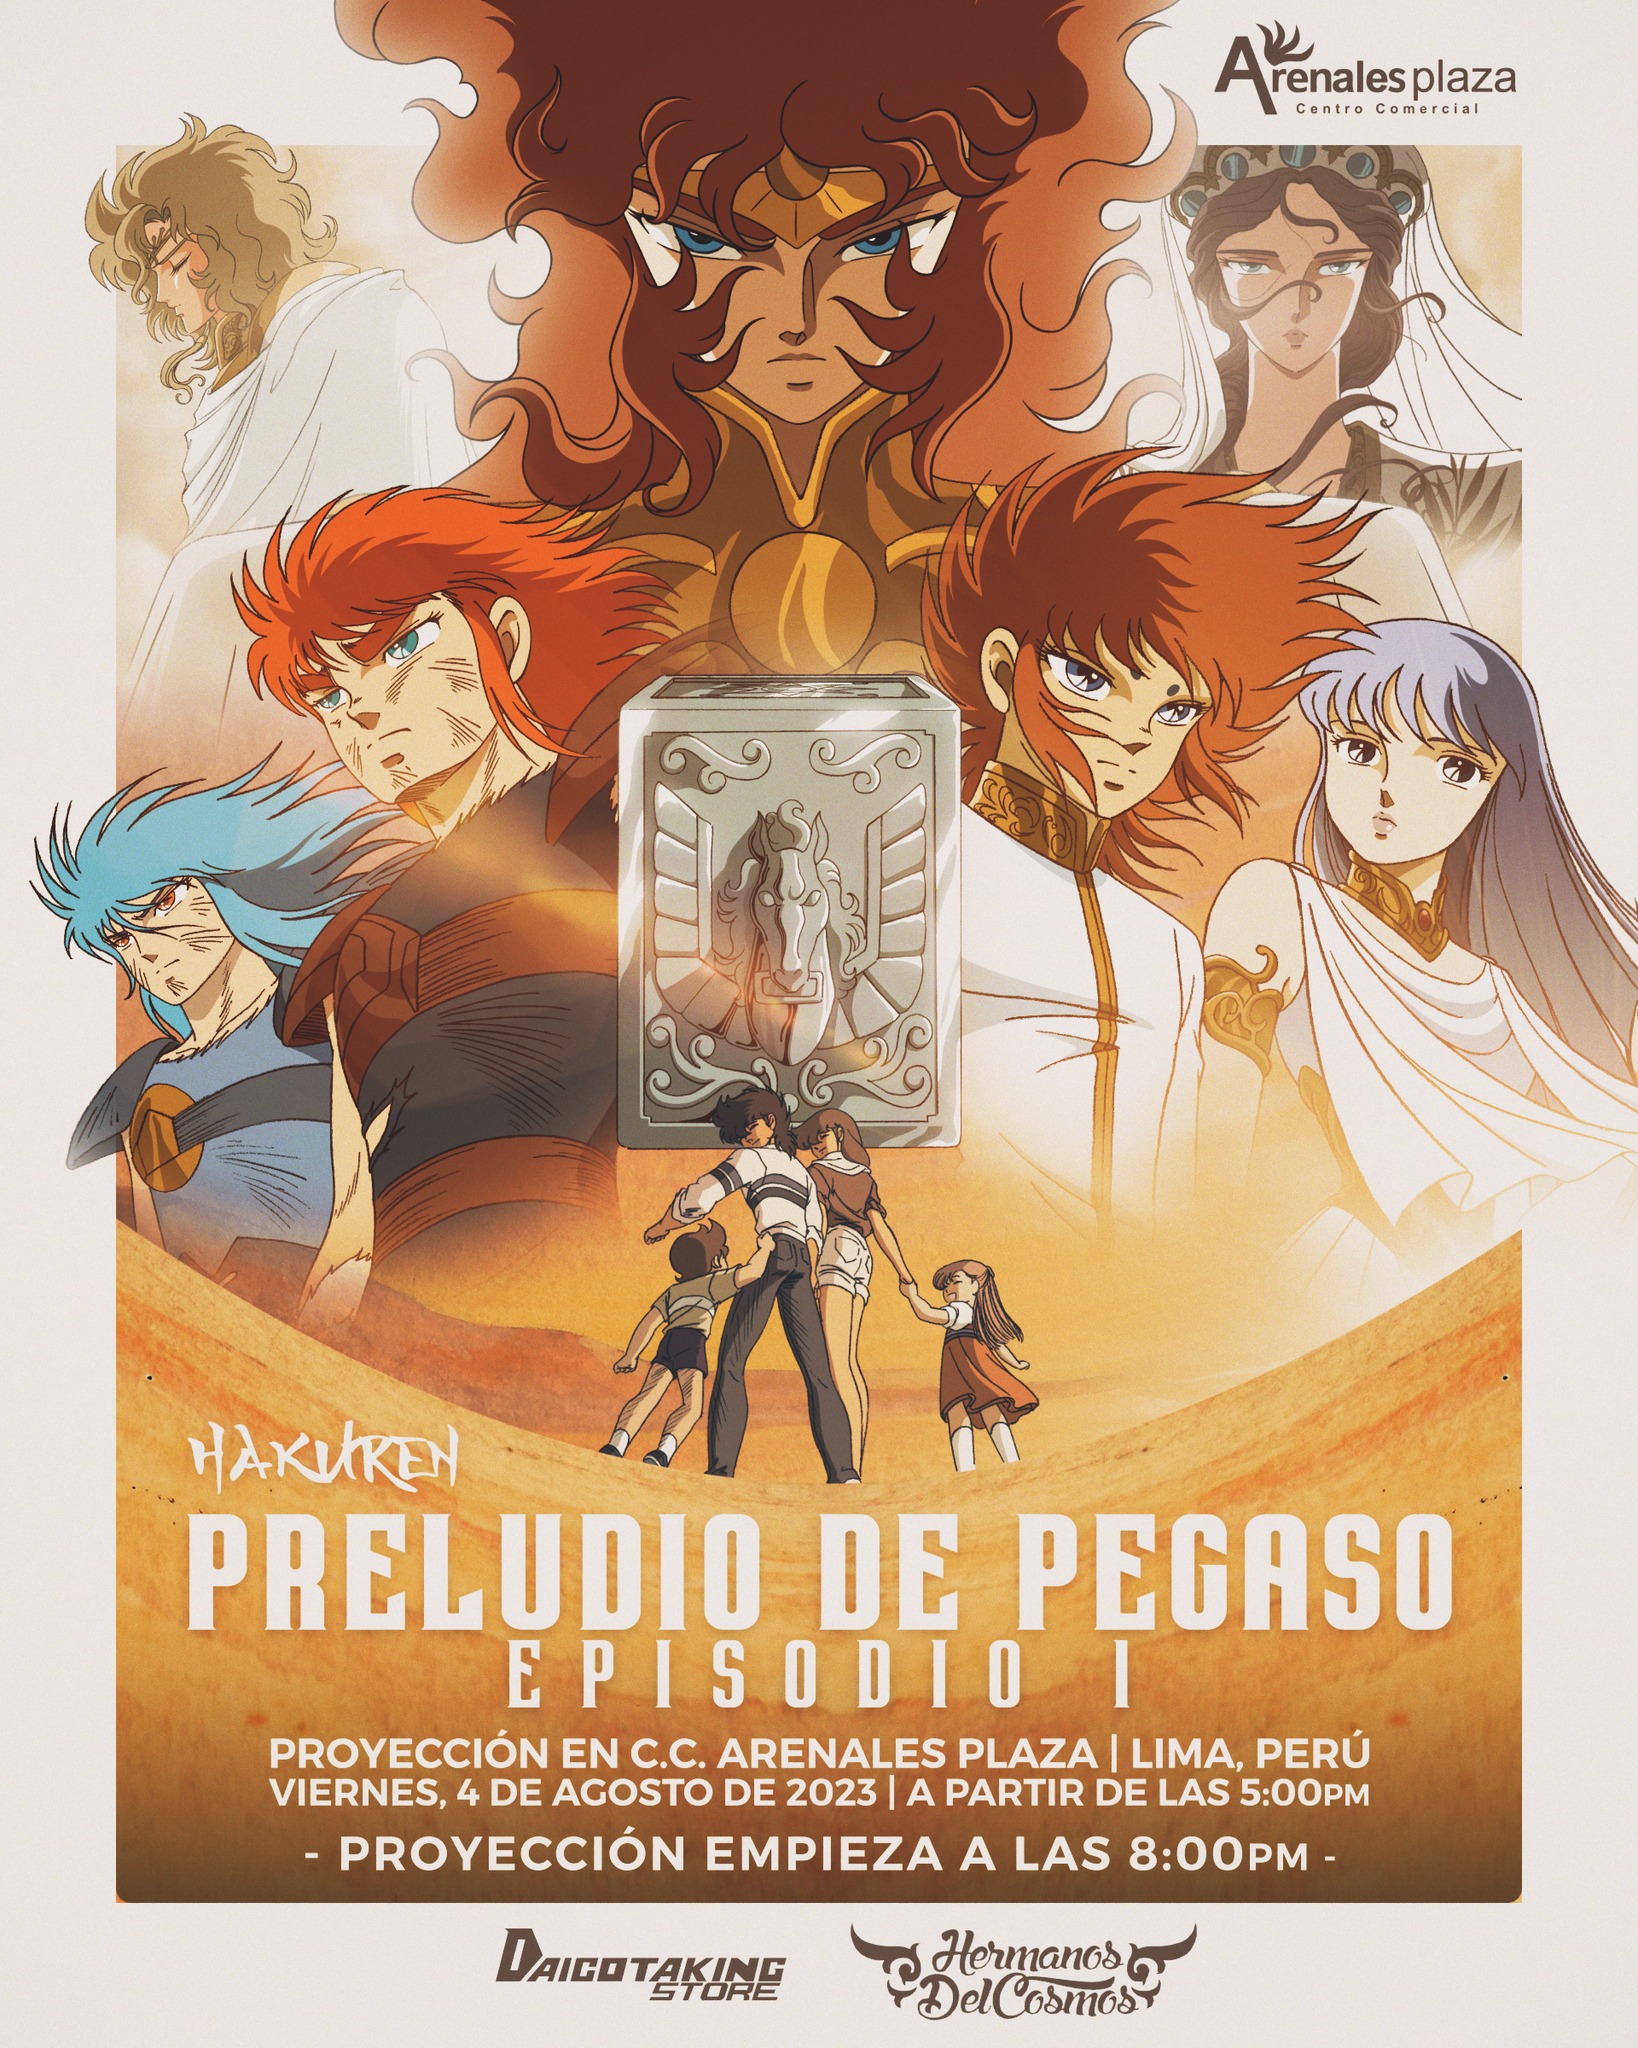 Il “Preludio de Pegaso”: la fan serie animata dei Cavalieri dello Zodiaco